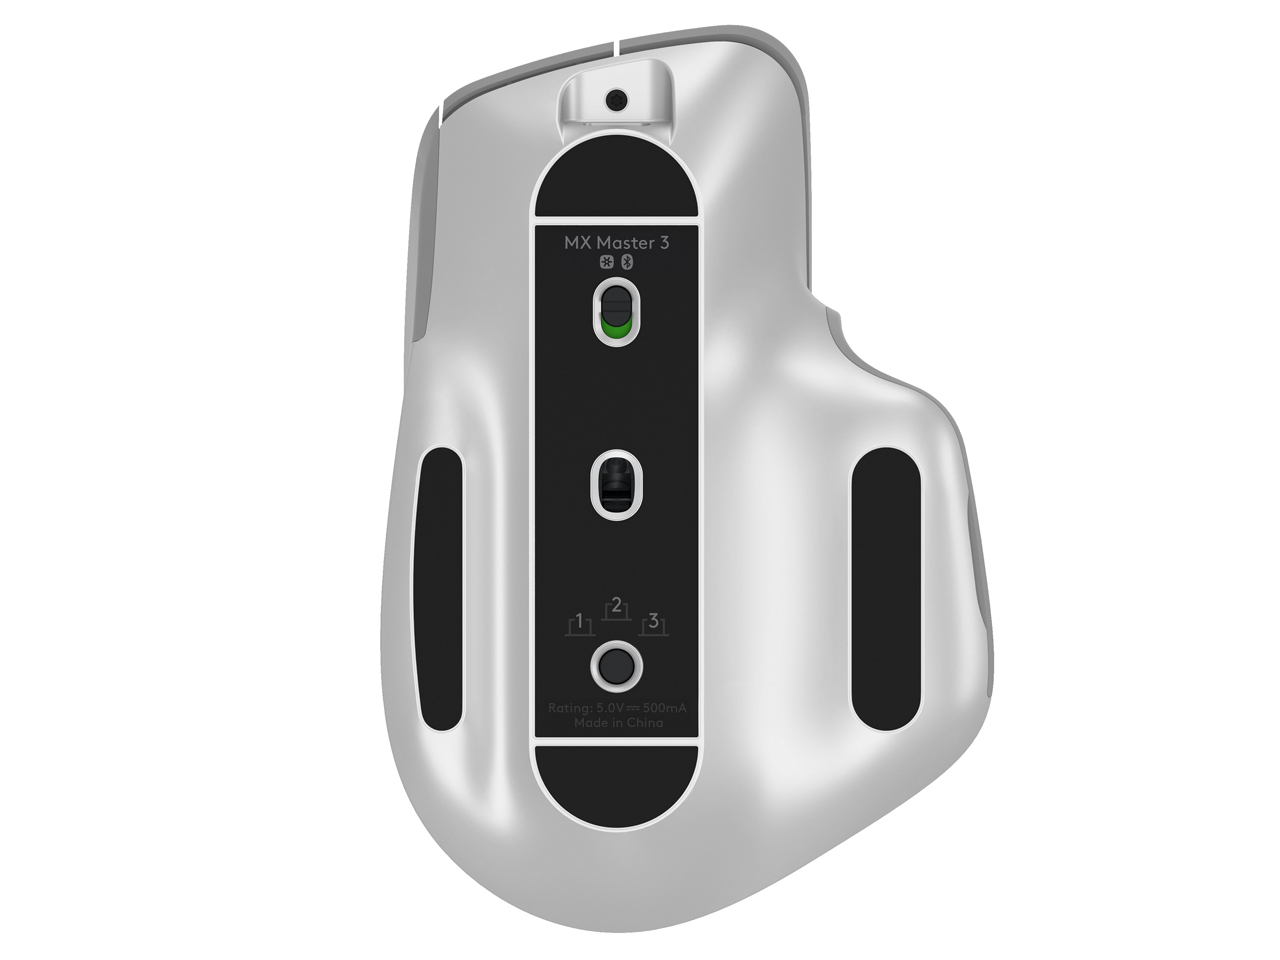 価格.com - MX Master 3 Advanced Wireless Mouse MX2200sMG [ミッドグレイ] の製品画像